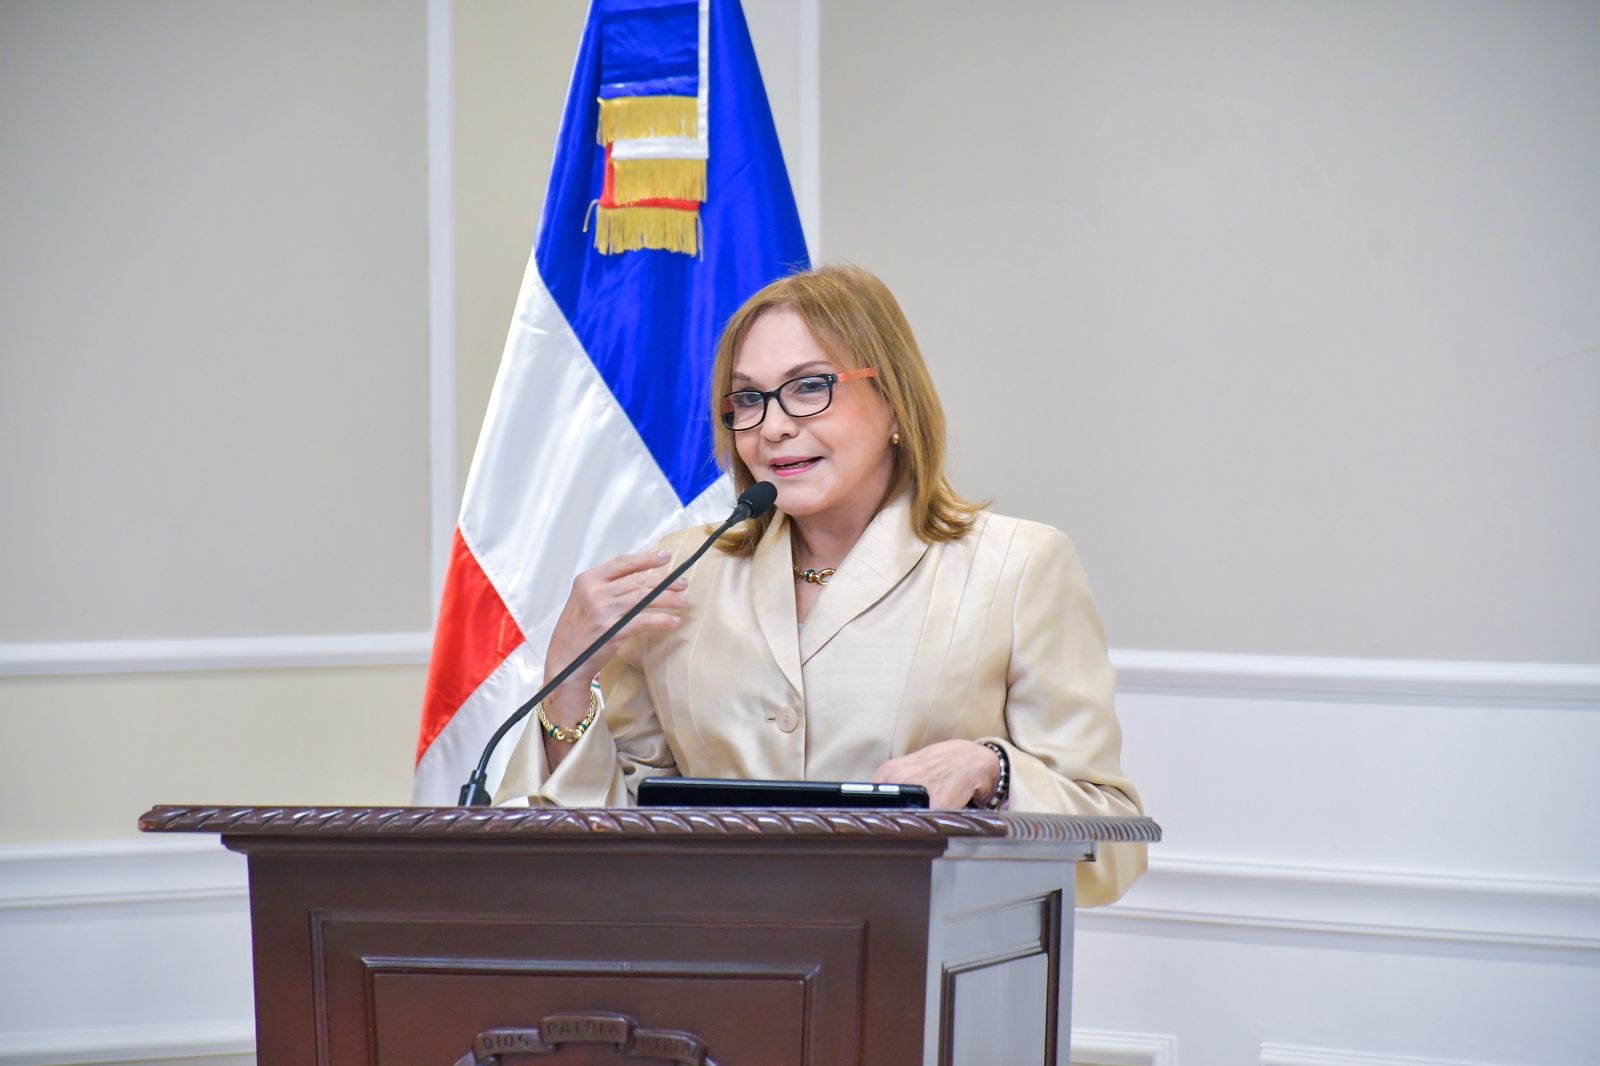 Senado de la Republica reconoce trayectoria de especialista en neuropsiquiatria Daisy Acosta 2